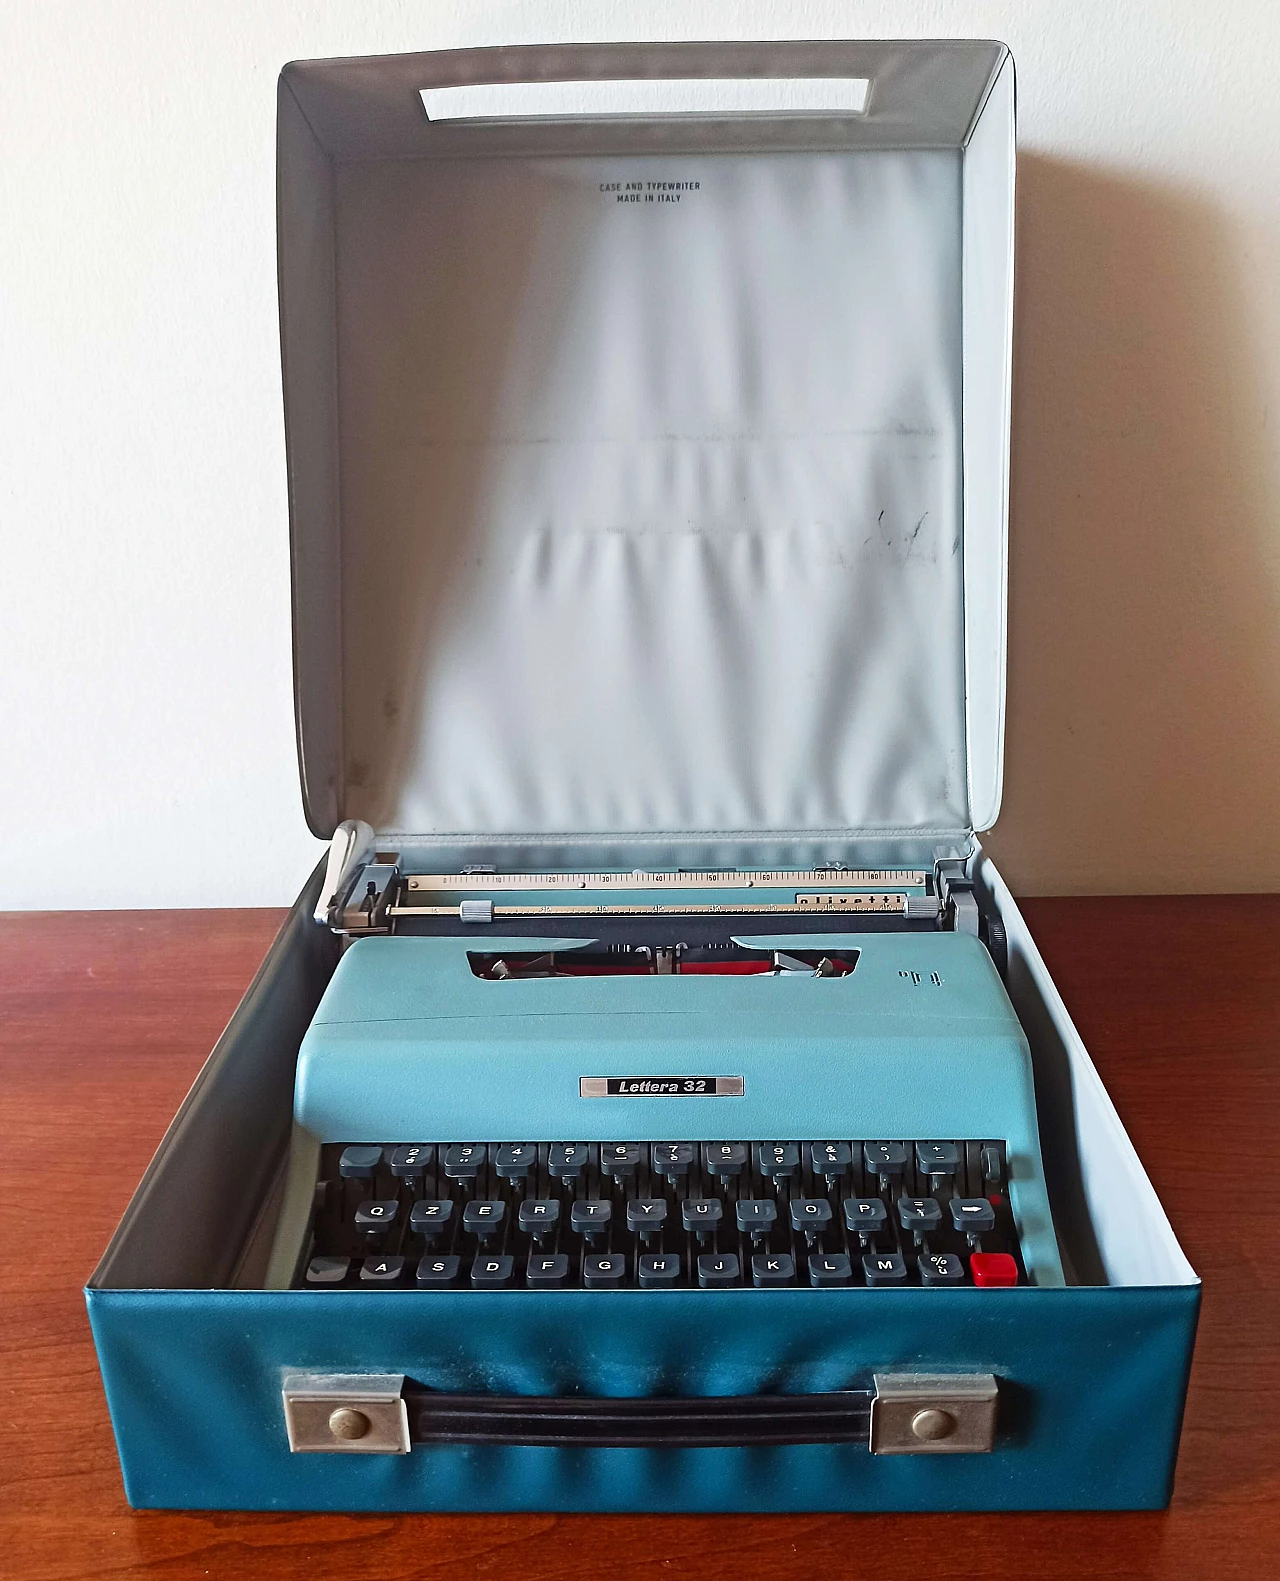 Lettera 32 typewriter by Nizzoli for Olivetti, 1960s 1